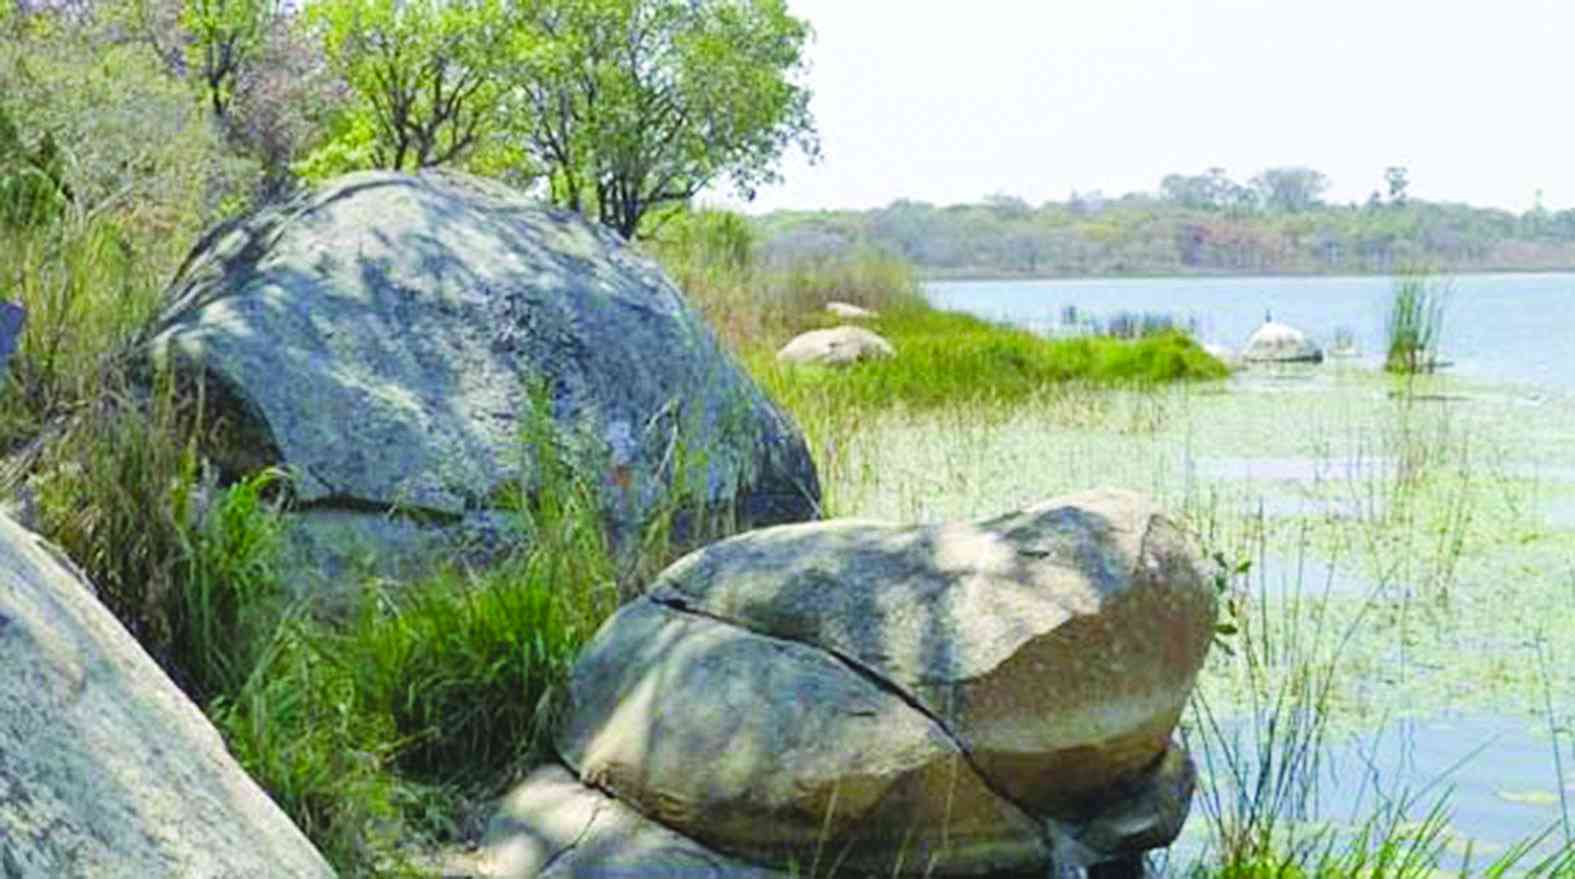 Residents’ concern over destruction of wetlands